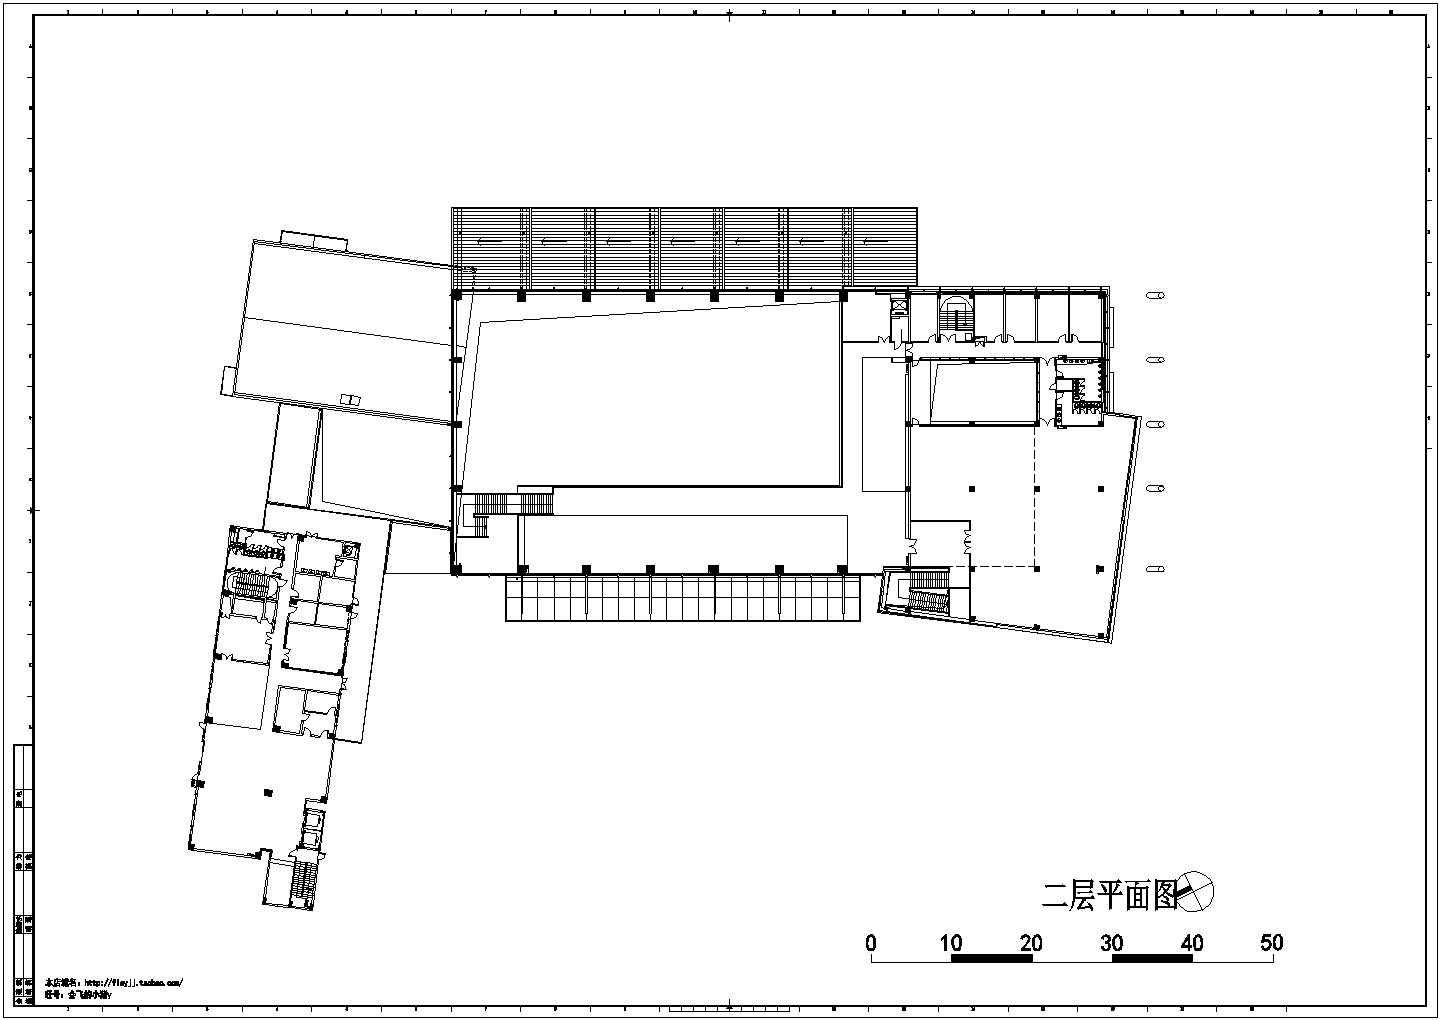 某镇2层14421平米汽车客运站筋混凝土框架结构建筑设计图，屋顶为钢结构【共5个CAD文件 1JPG外观效果图 1DOC文档 】